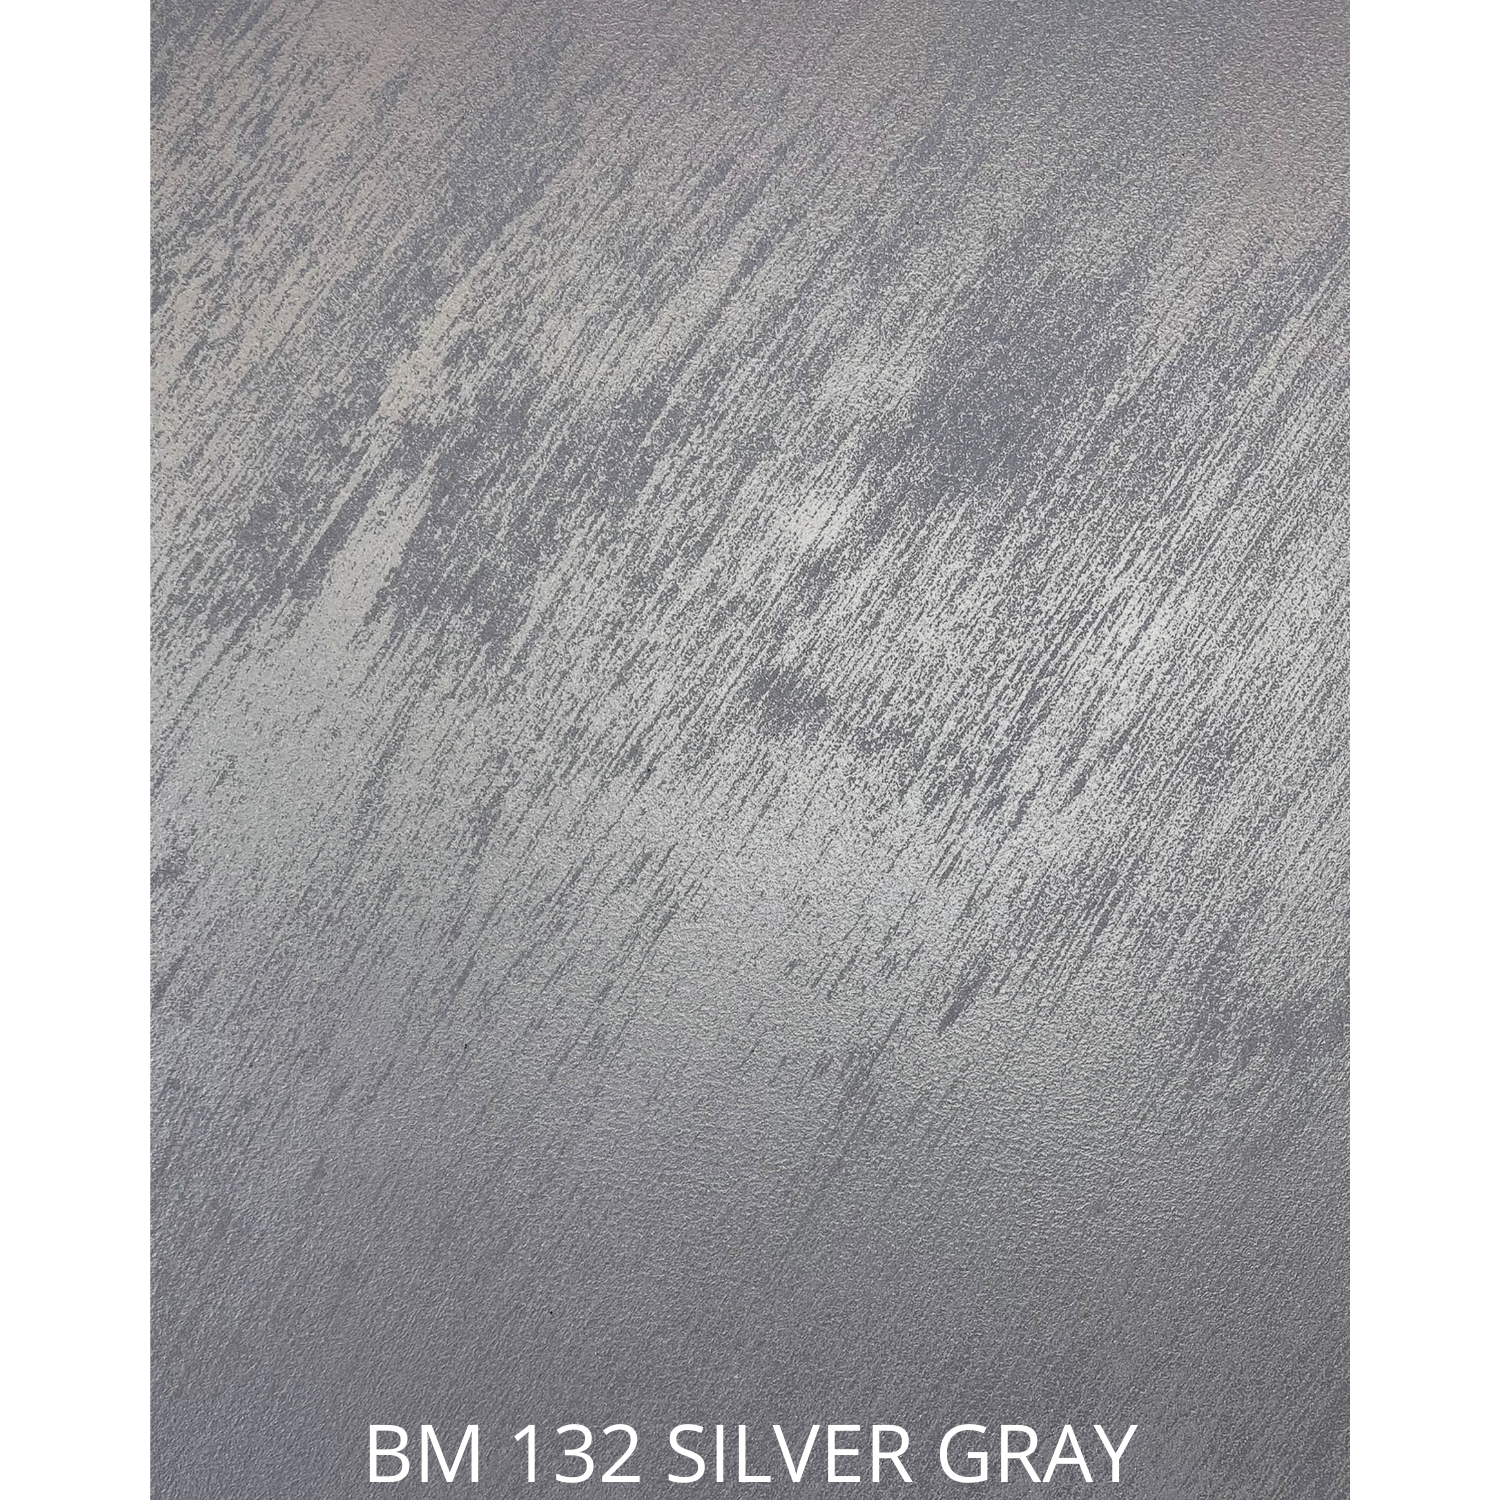 BM122 aluminium gray